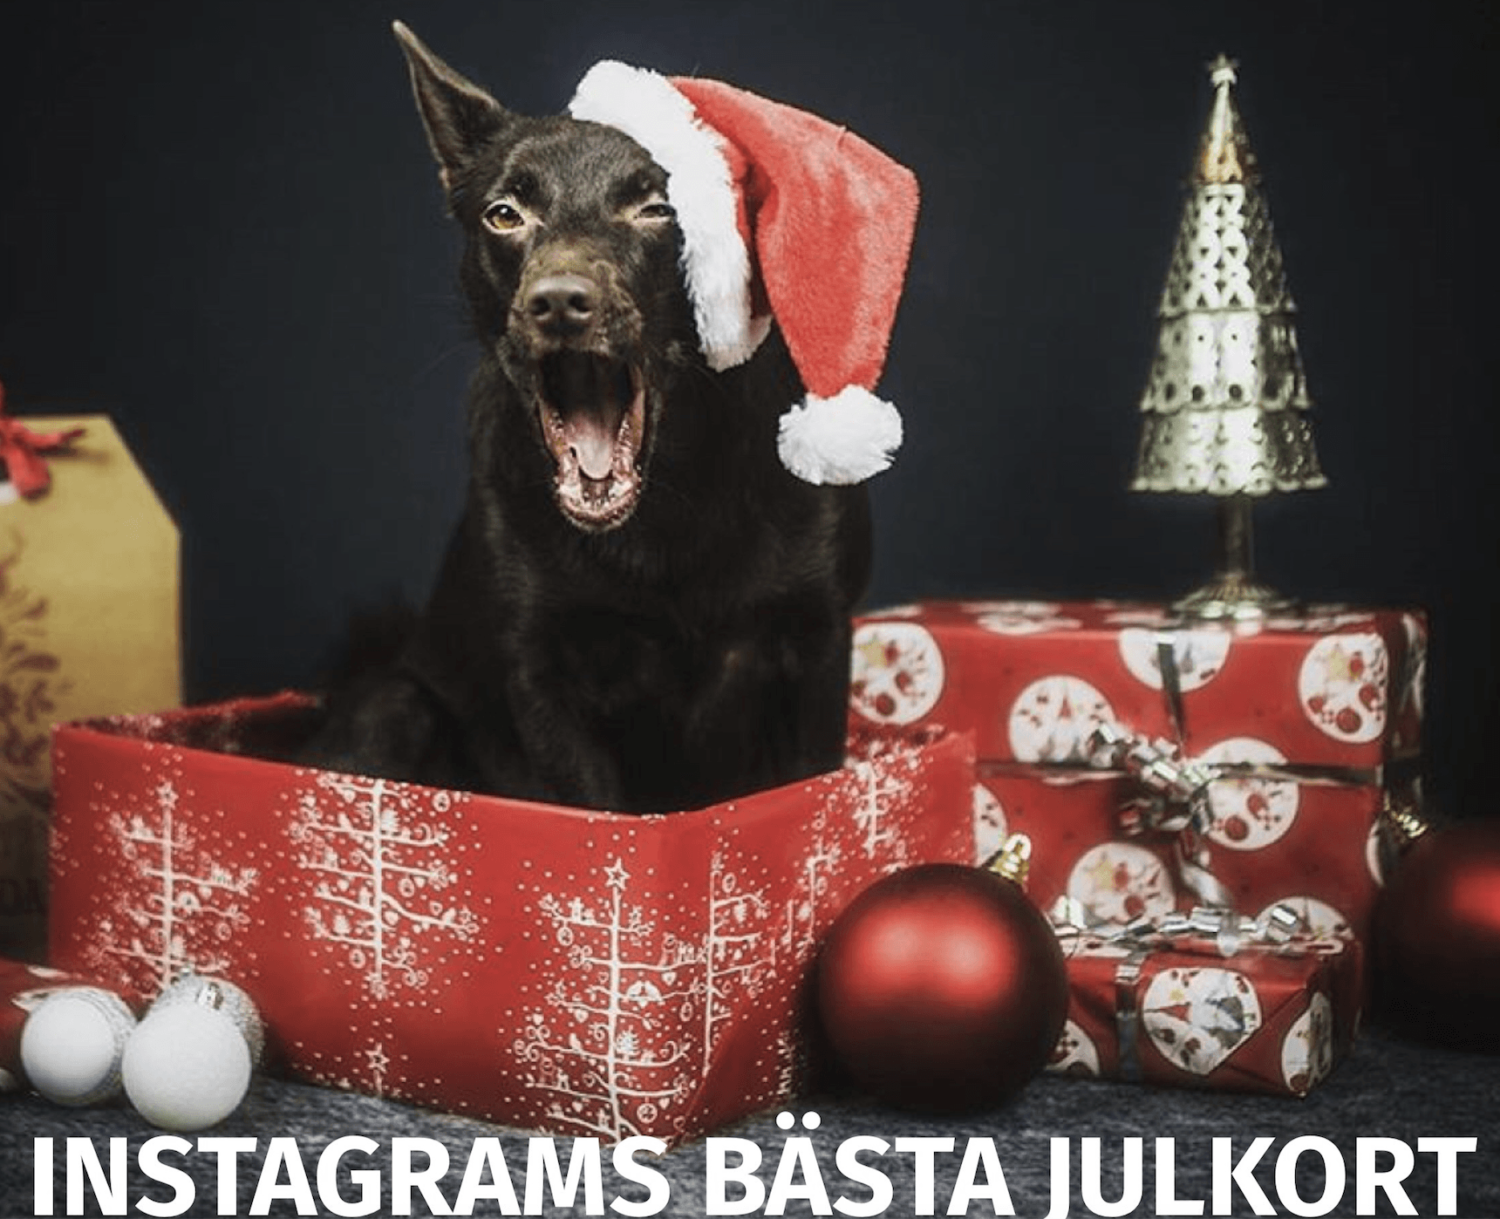 Instagrams bästa julkort!